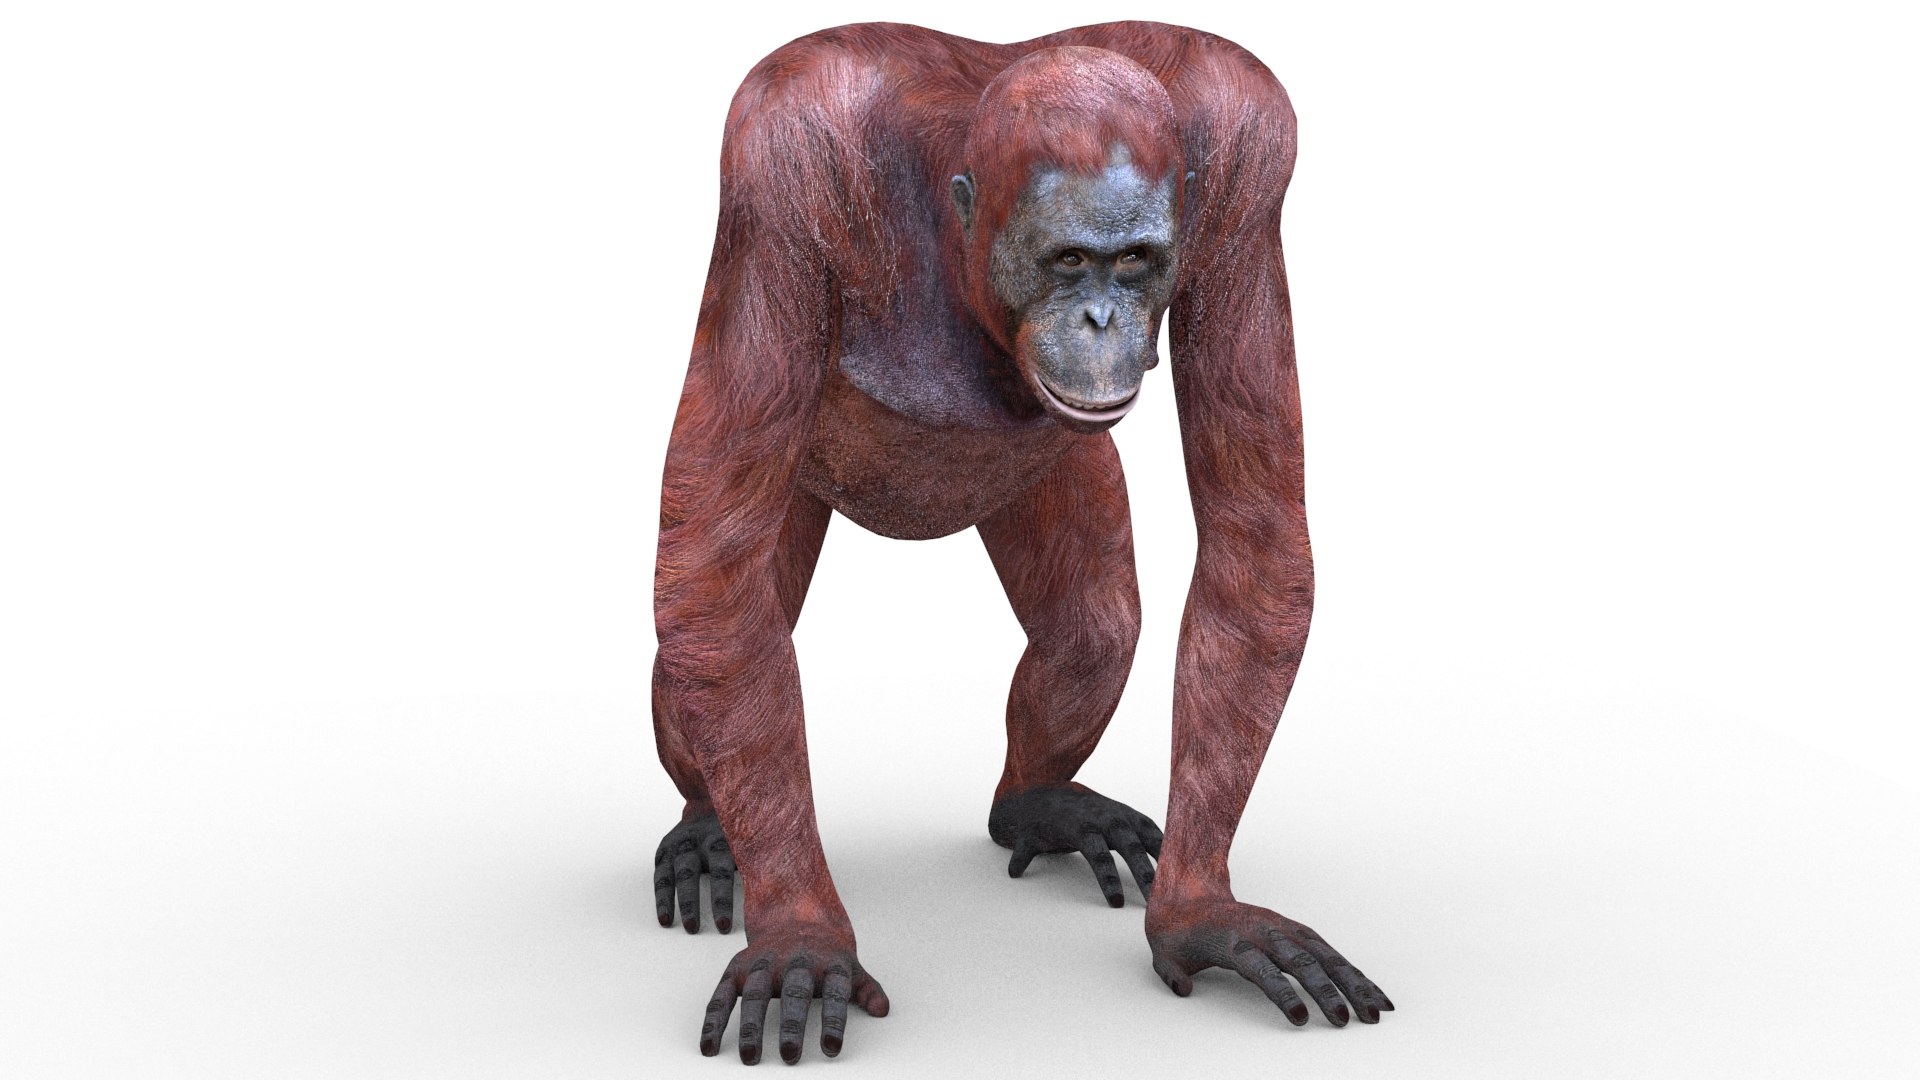 Orangutan female animations 3D model TurboSquid 1601579